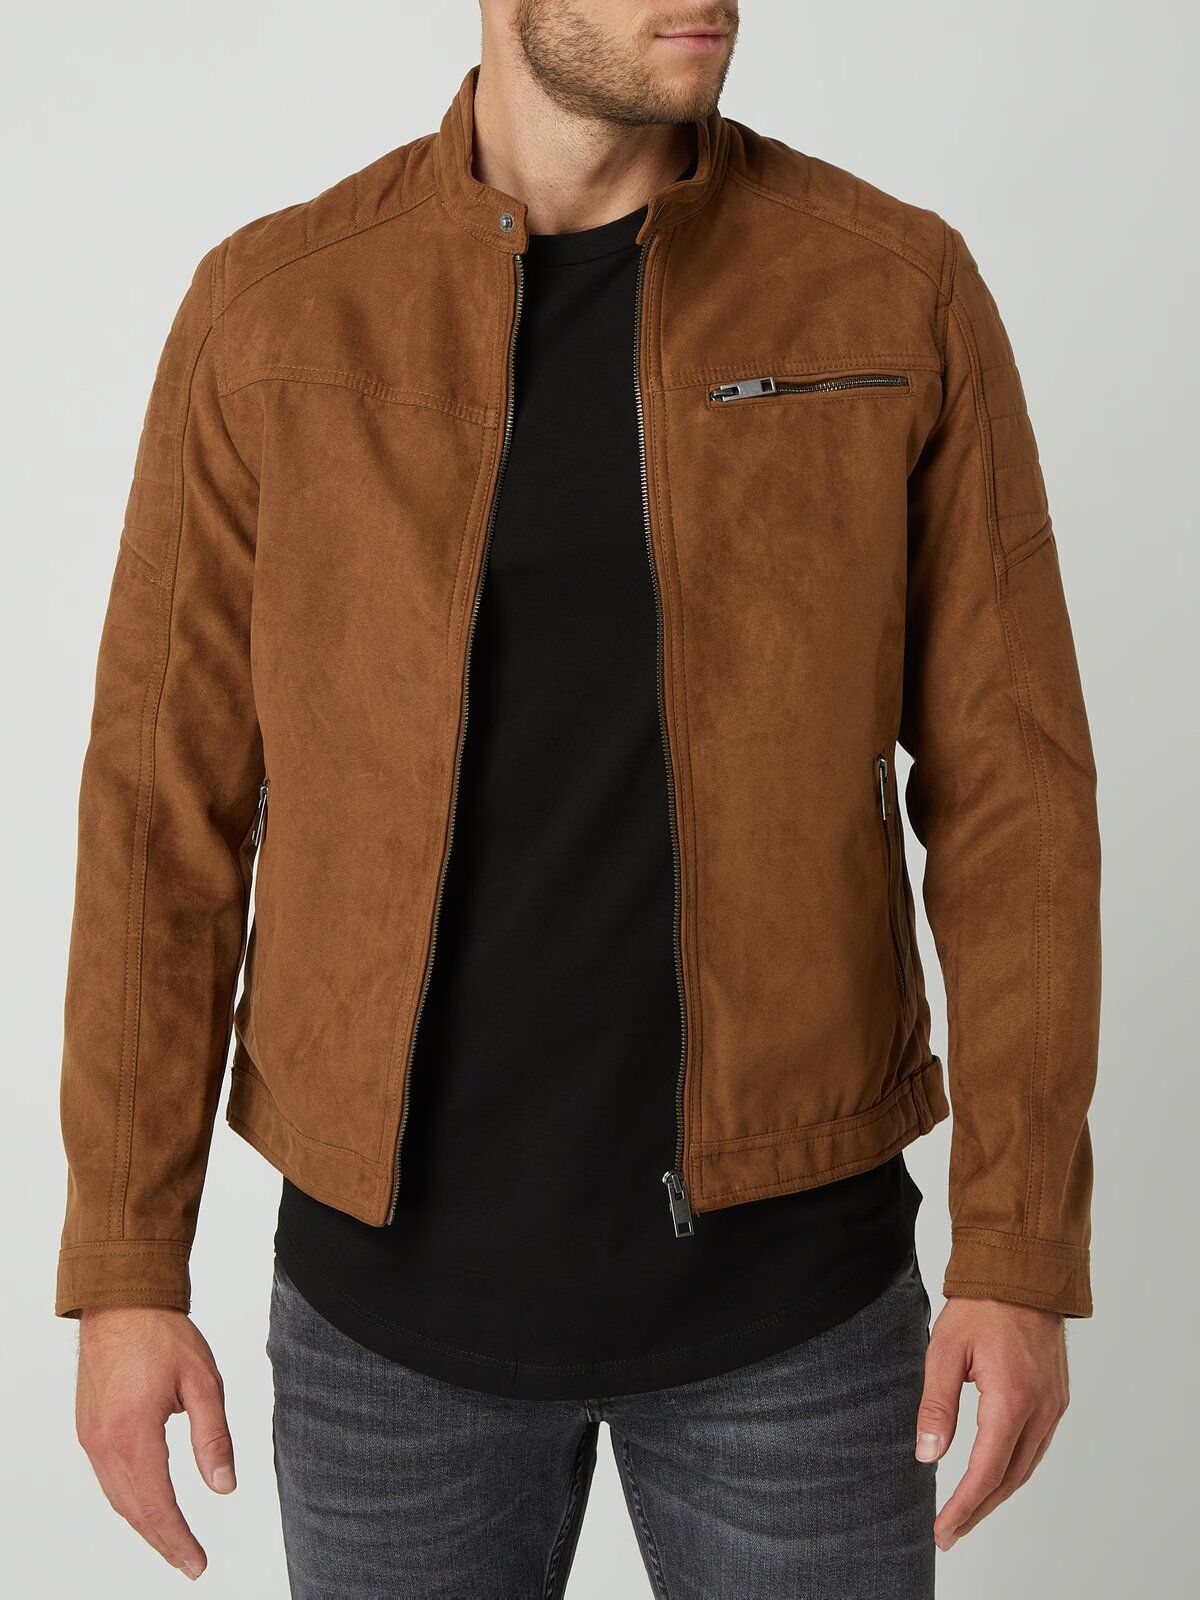 Кожаная куртка мужская Jack & Jones Rocky коричневая L